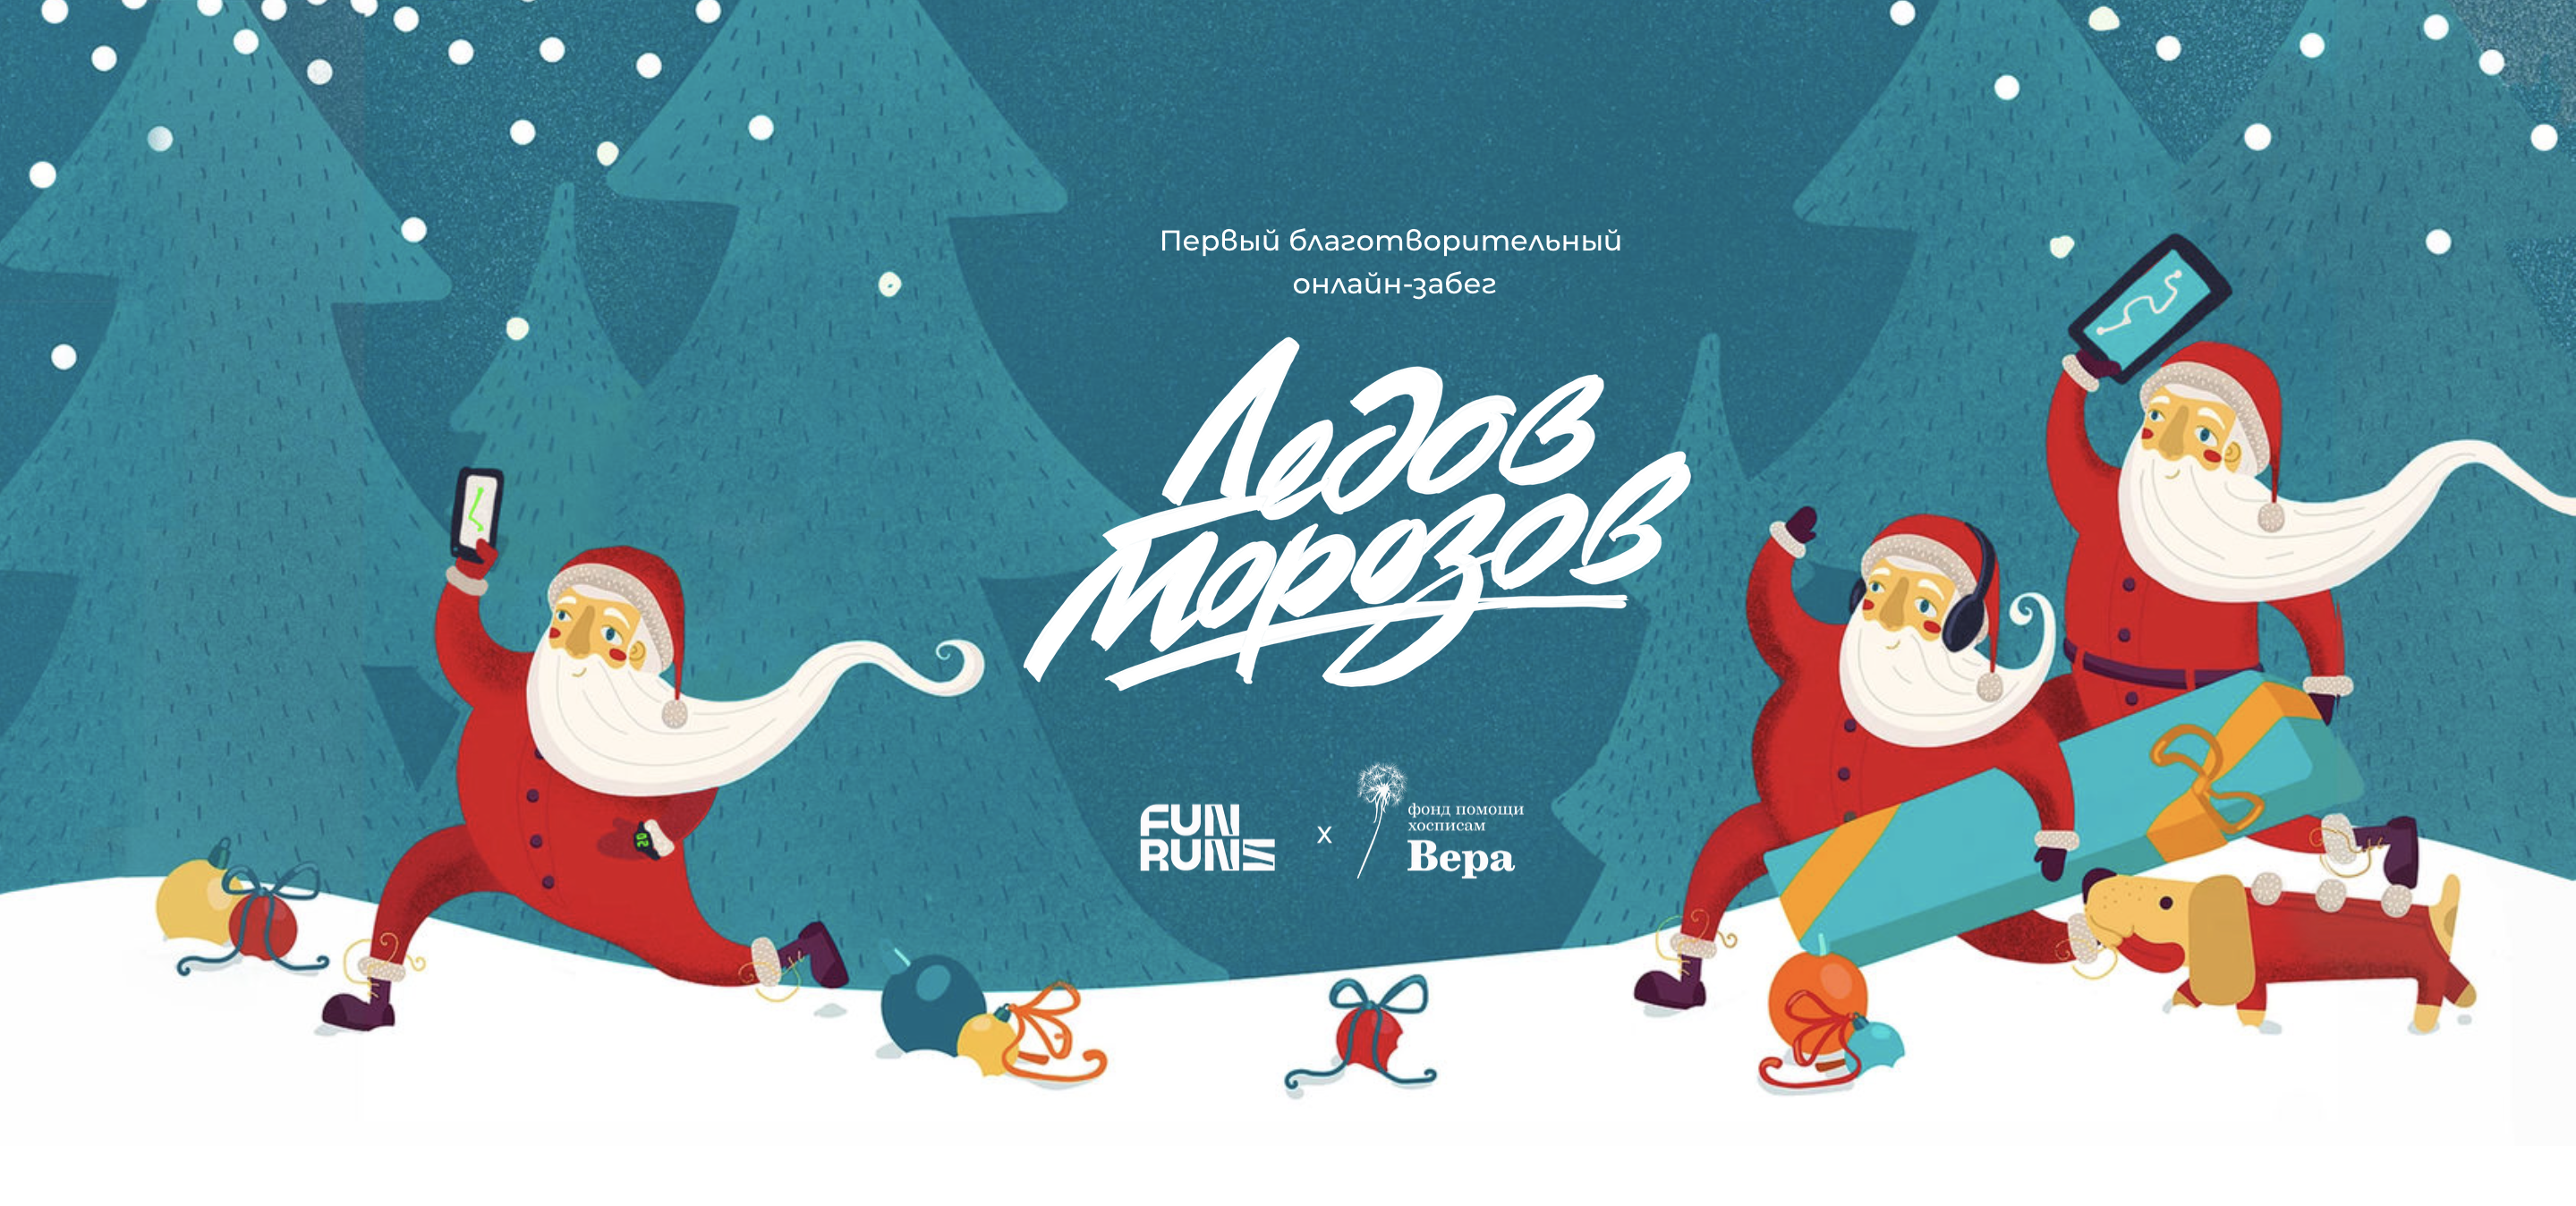 Предновогодний благотворительный забег Дедов Морозов пройдет 26 декабря 2020.